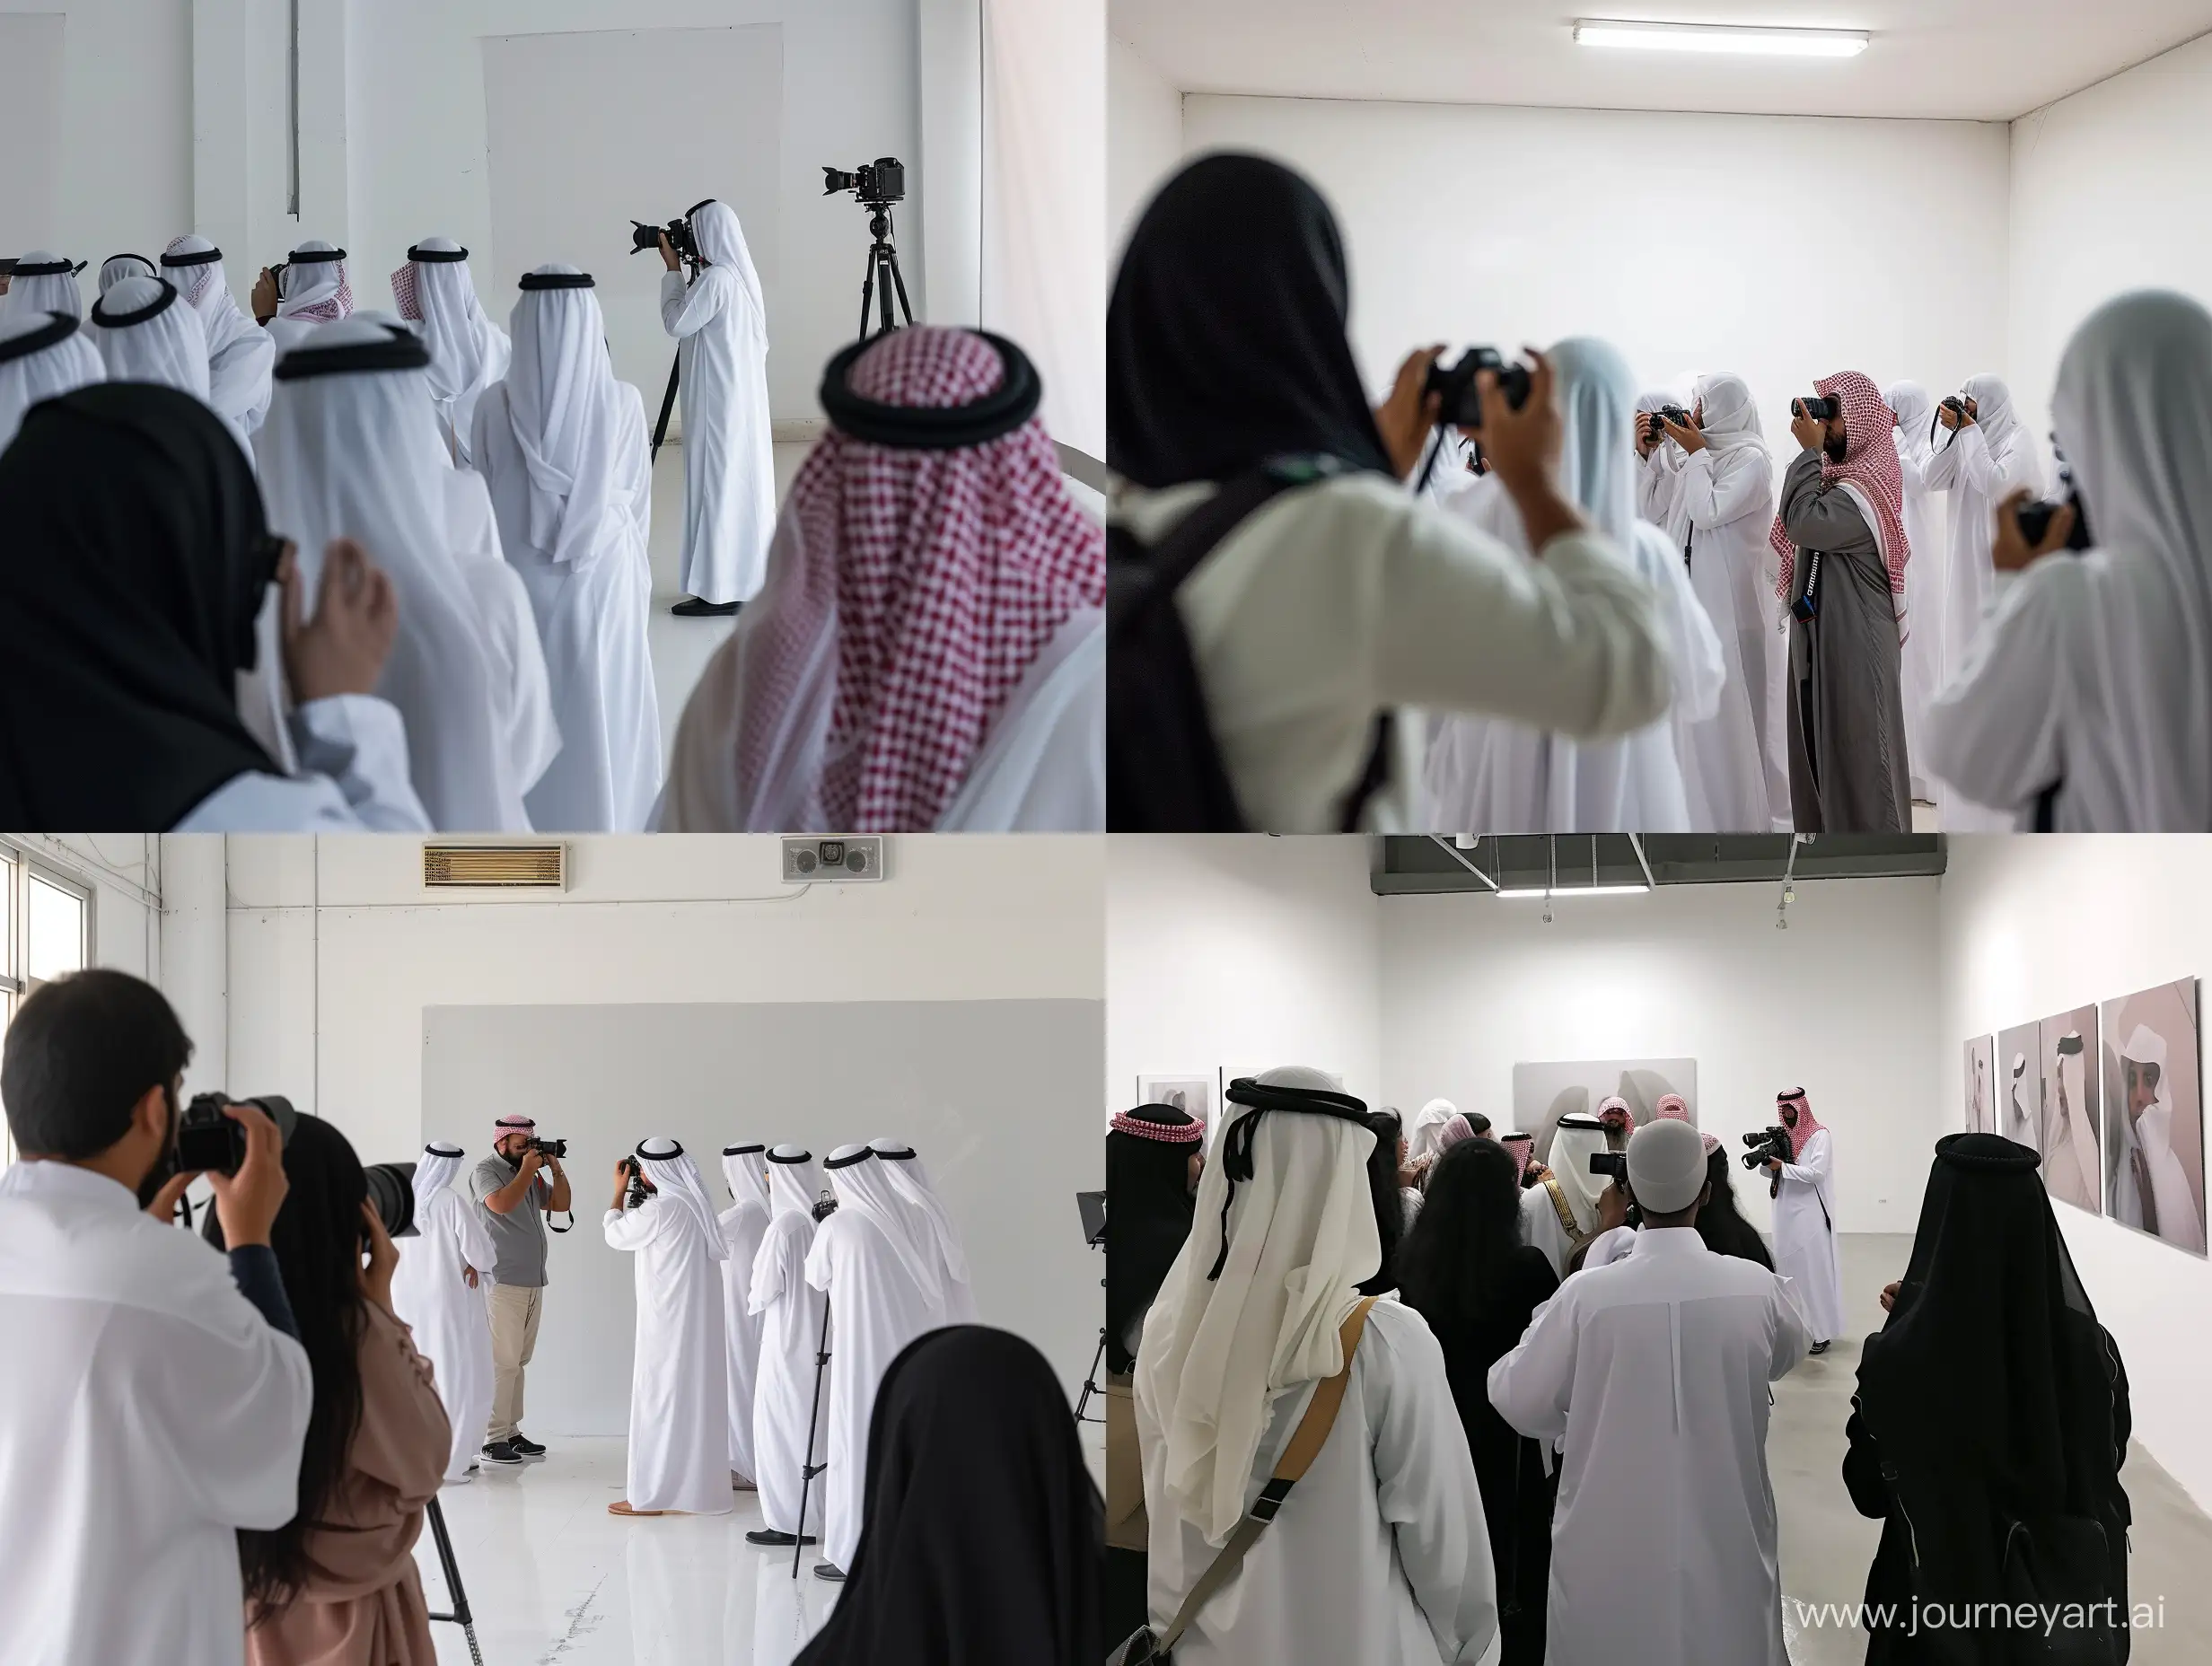 مجموعة مصورين في ورشة تدريبية في قاعة جدرانها بيضاء يقدمها مصور ويشرح لطلاب يرتدون ثياب بيضاء سعودية على جهاز الكاميرا (الصورة بعيدة)